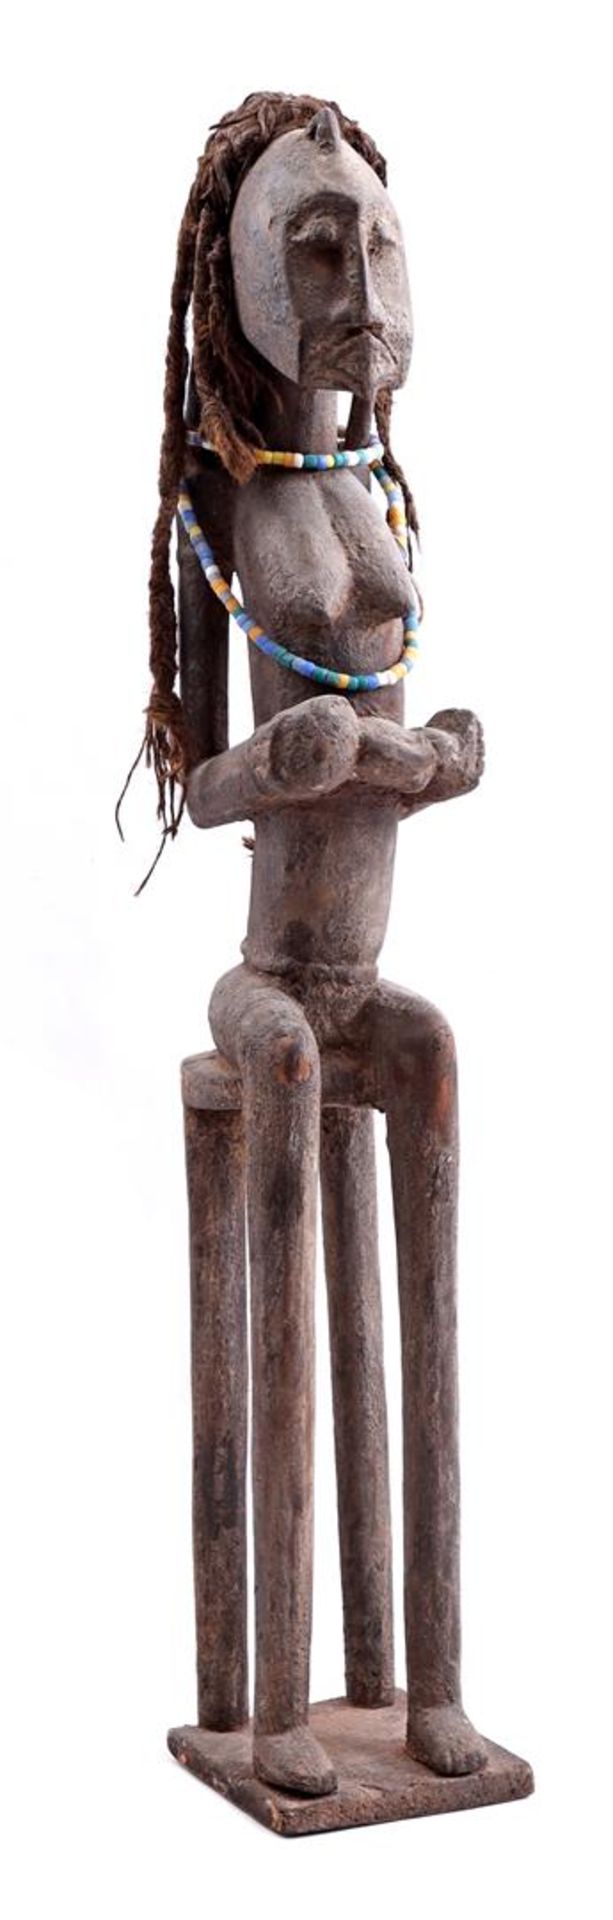 Ceremonial wooden statue, Senufo tribe